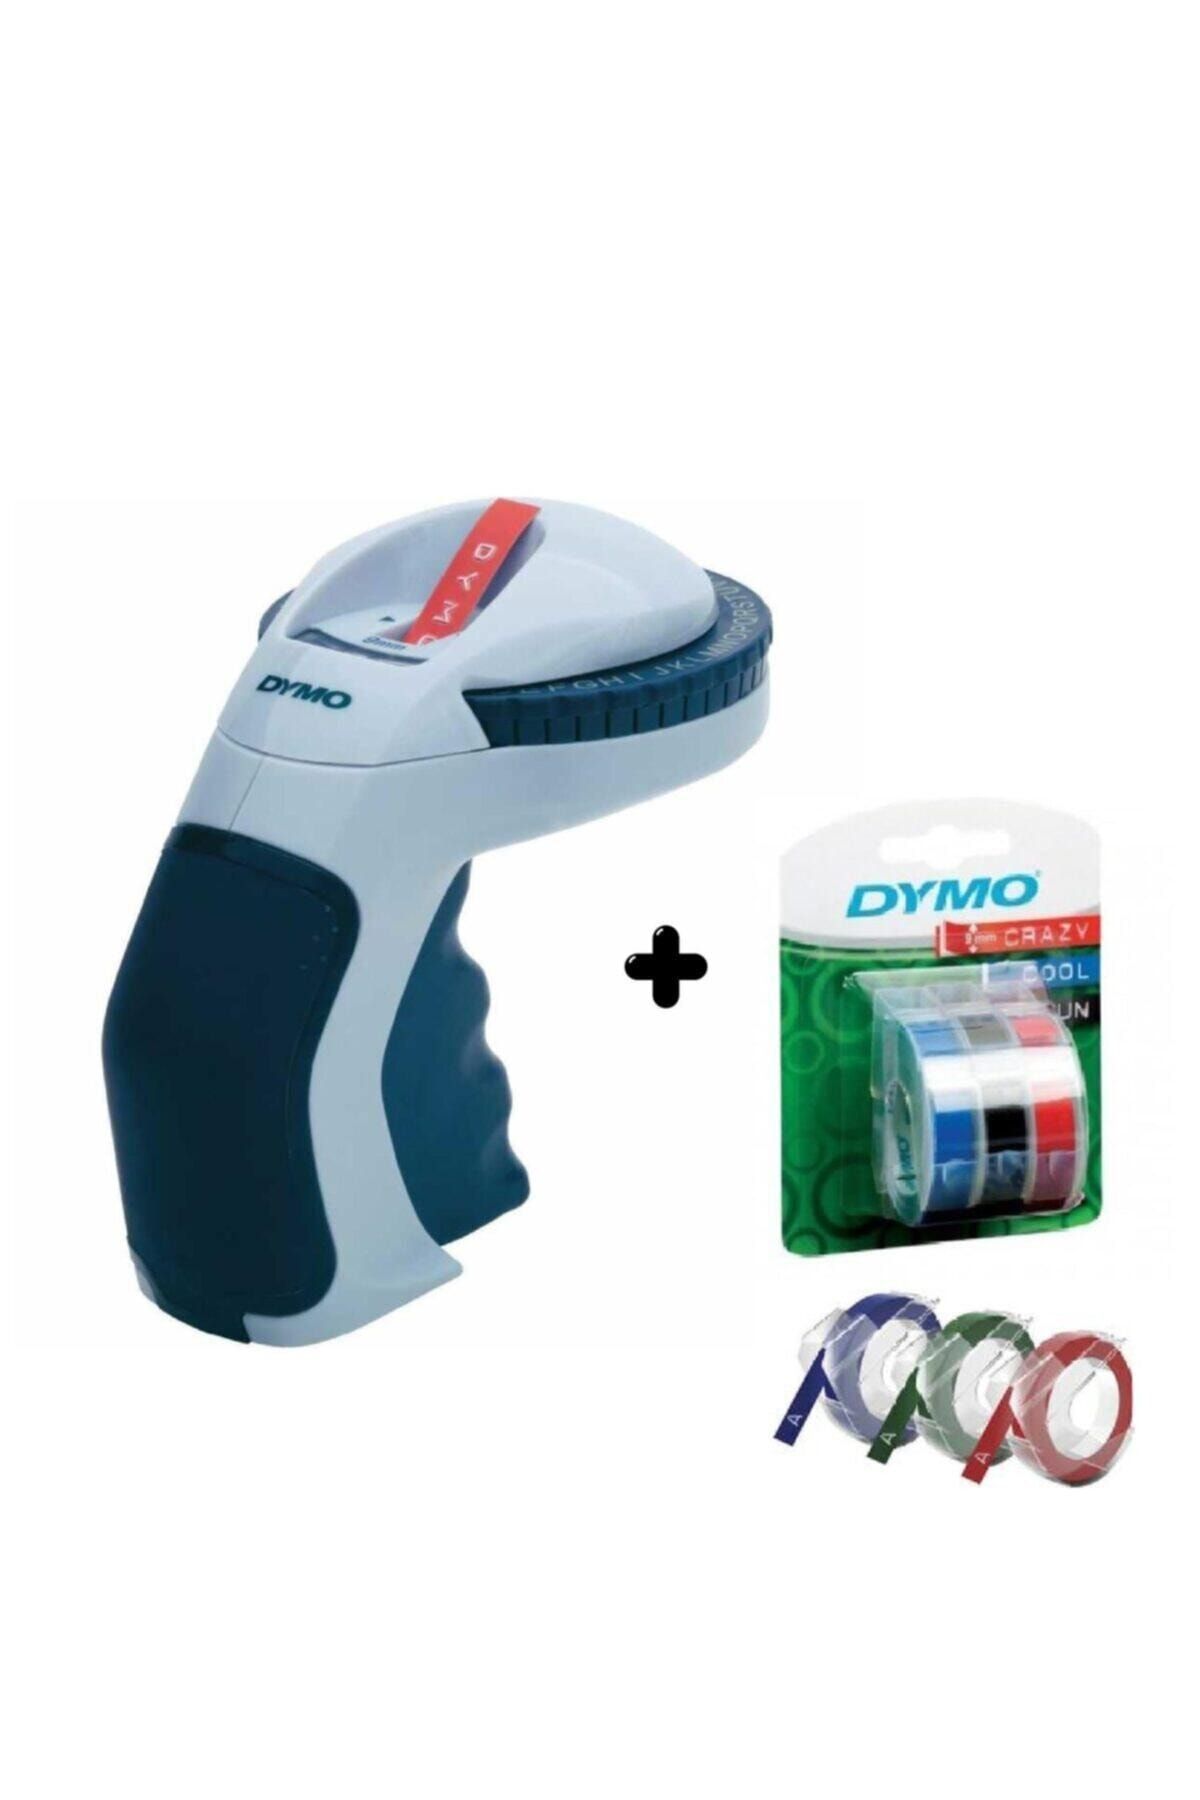 Dymo Omega Etiket Makinesi 3lü Blisterli Yedek Şerit 9mm*3m Kırmızı,siyah,mavi